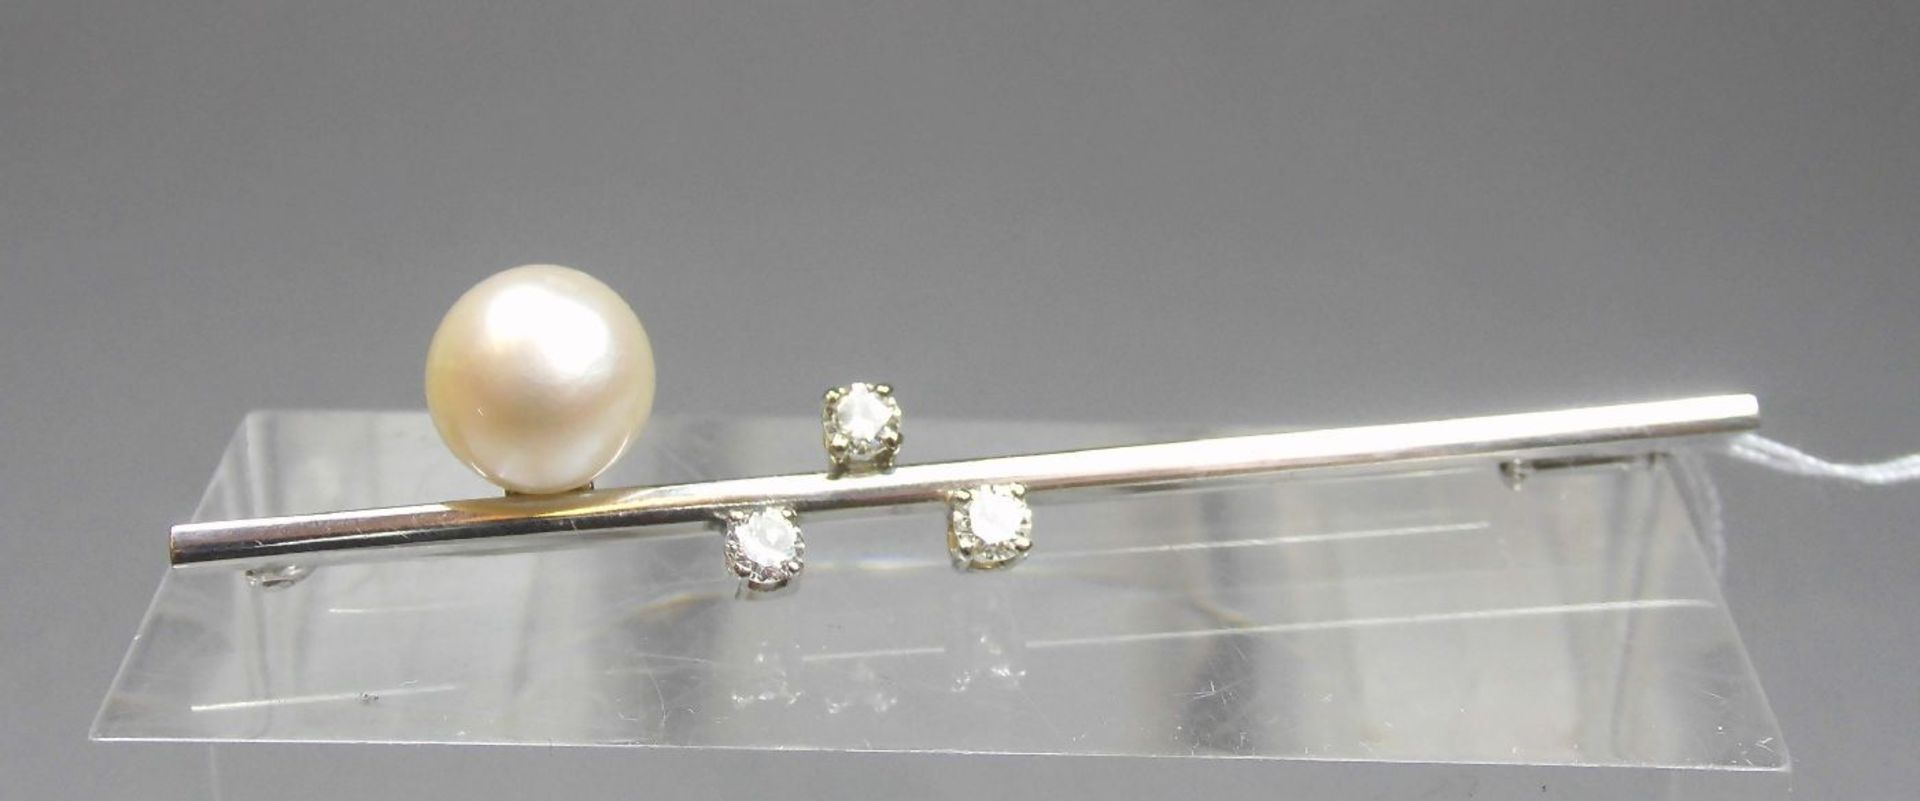 STAB - BROSCHE / brooch, 585er Weissgold (6 g), besetzt mit einer Perle und drei Brillanten von je - Bild 2 aus 4